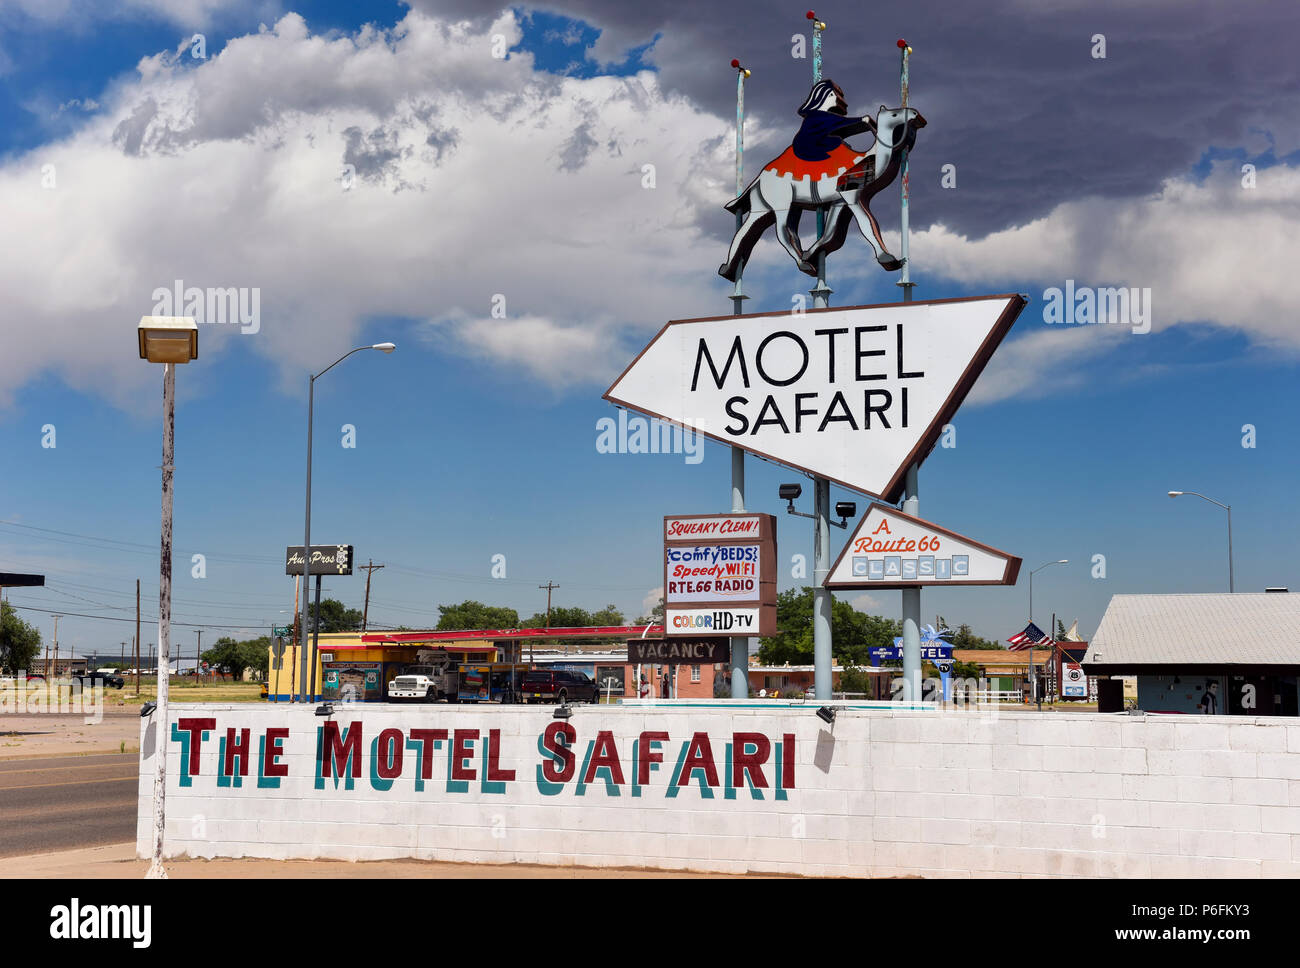 The Motel Safari in Tucumcari, New Mexico, USA Stock Photo